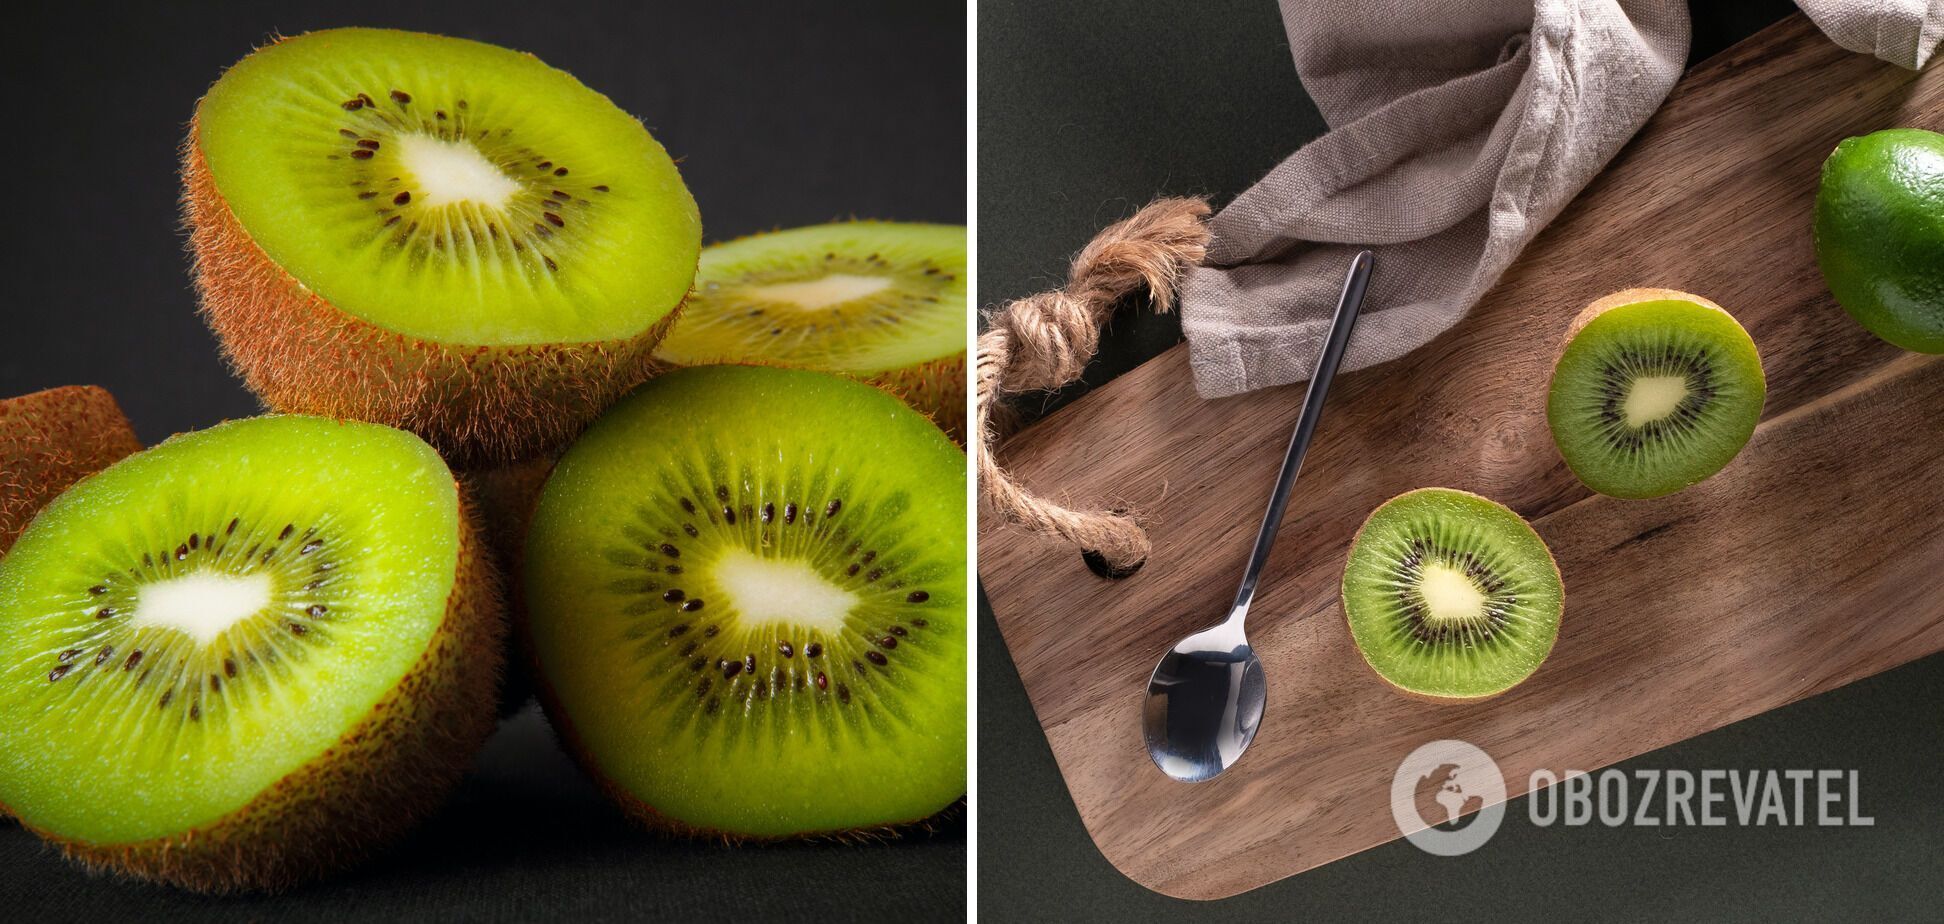 How to quickly peel kiwi